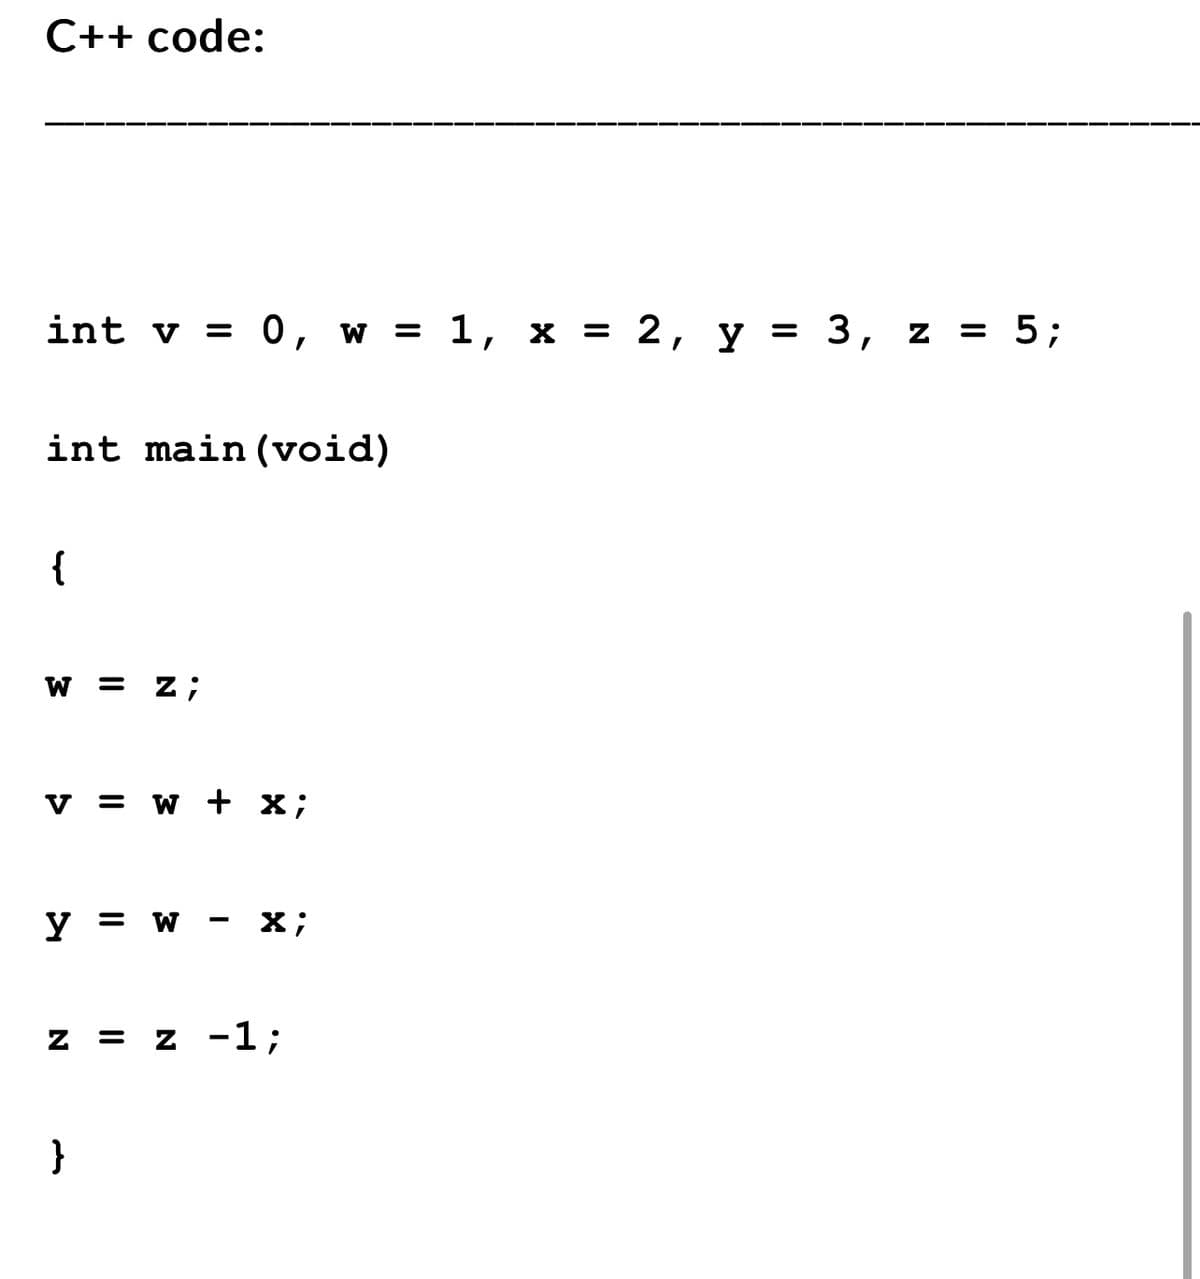 C++ code:
int v = 0, w = 1,
int main(void)
{
W = z;
V = W + x;
y = W
X;
Z = z -1;
}
X
=
2, y = = 3, z = 5;